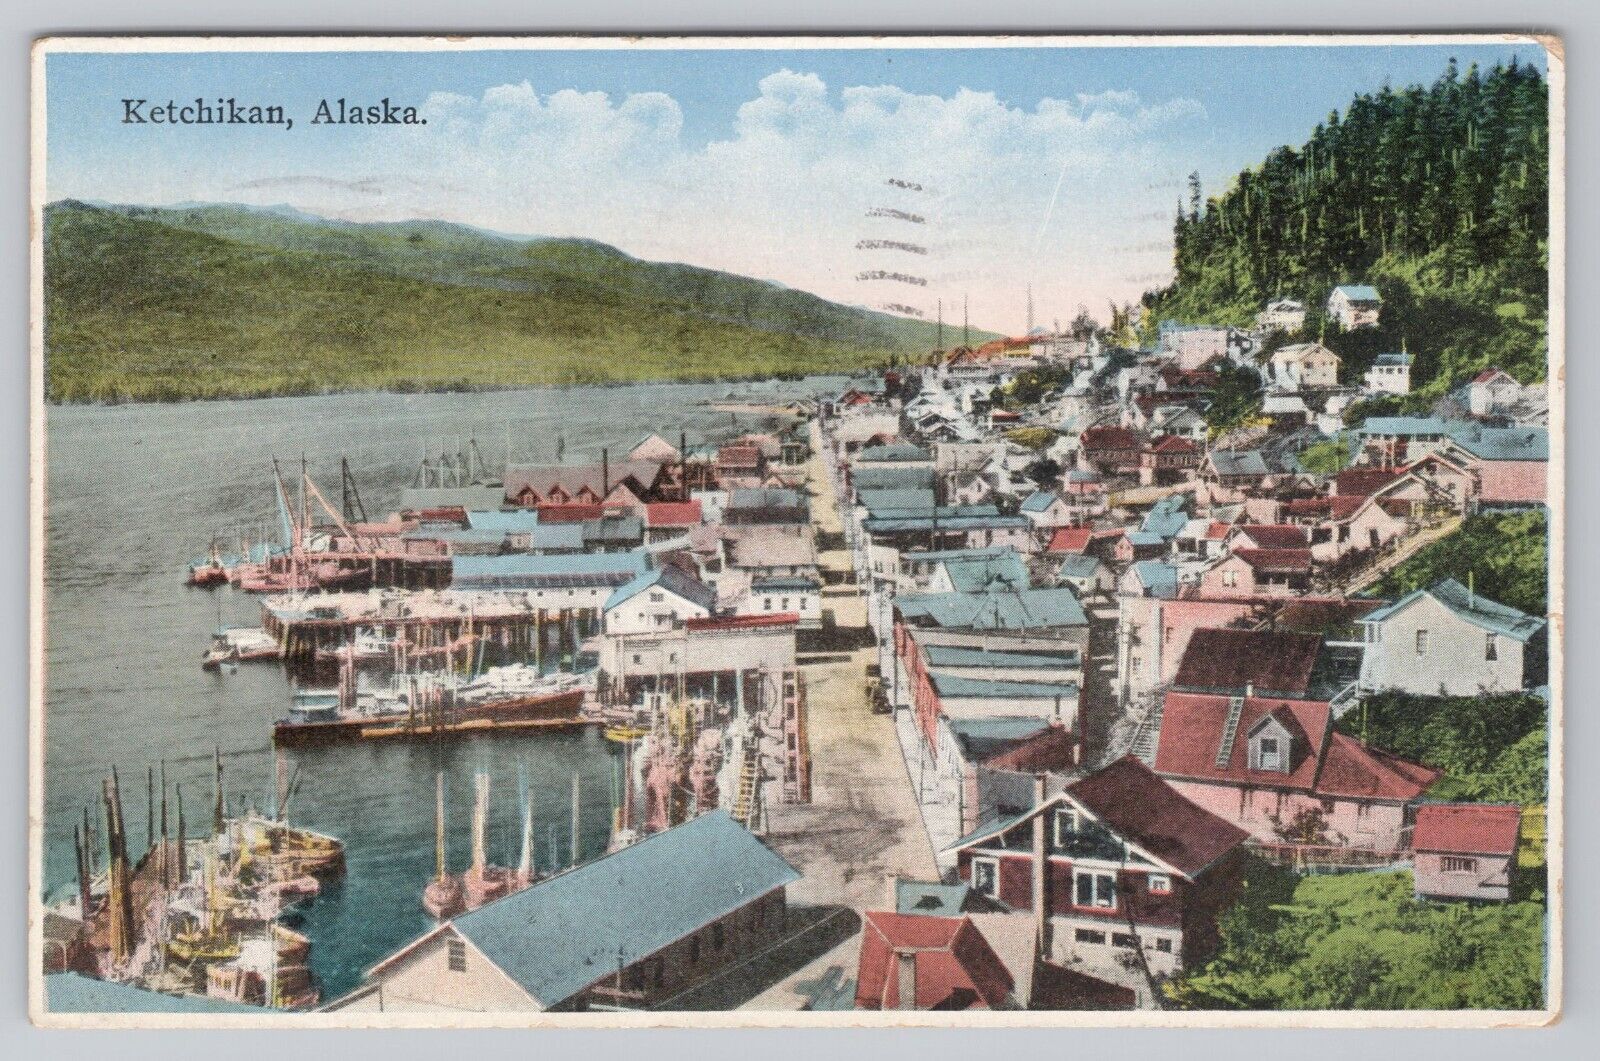 AK, Ketchikan, Alaska, Town View, Water Front, 1930s Postcard 0735